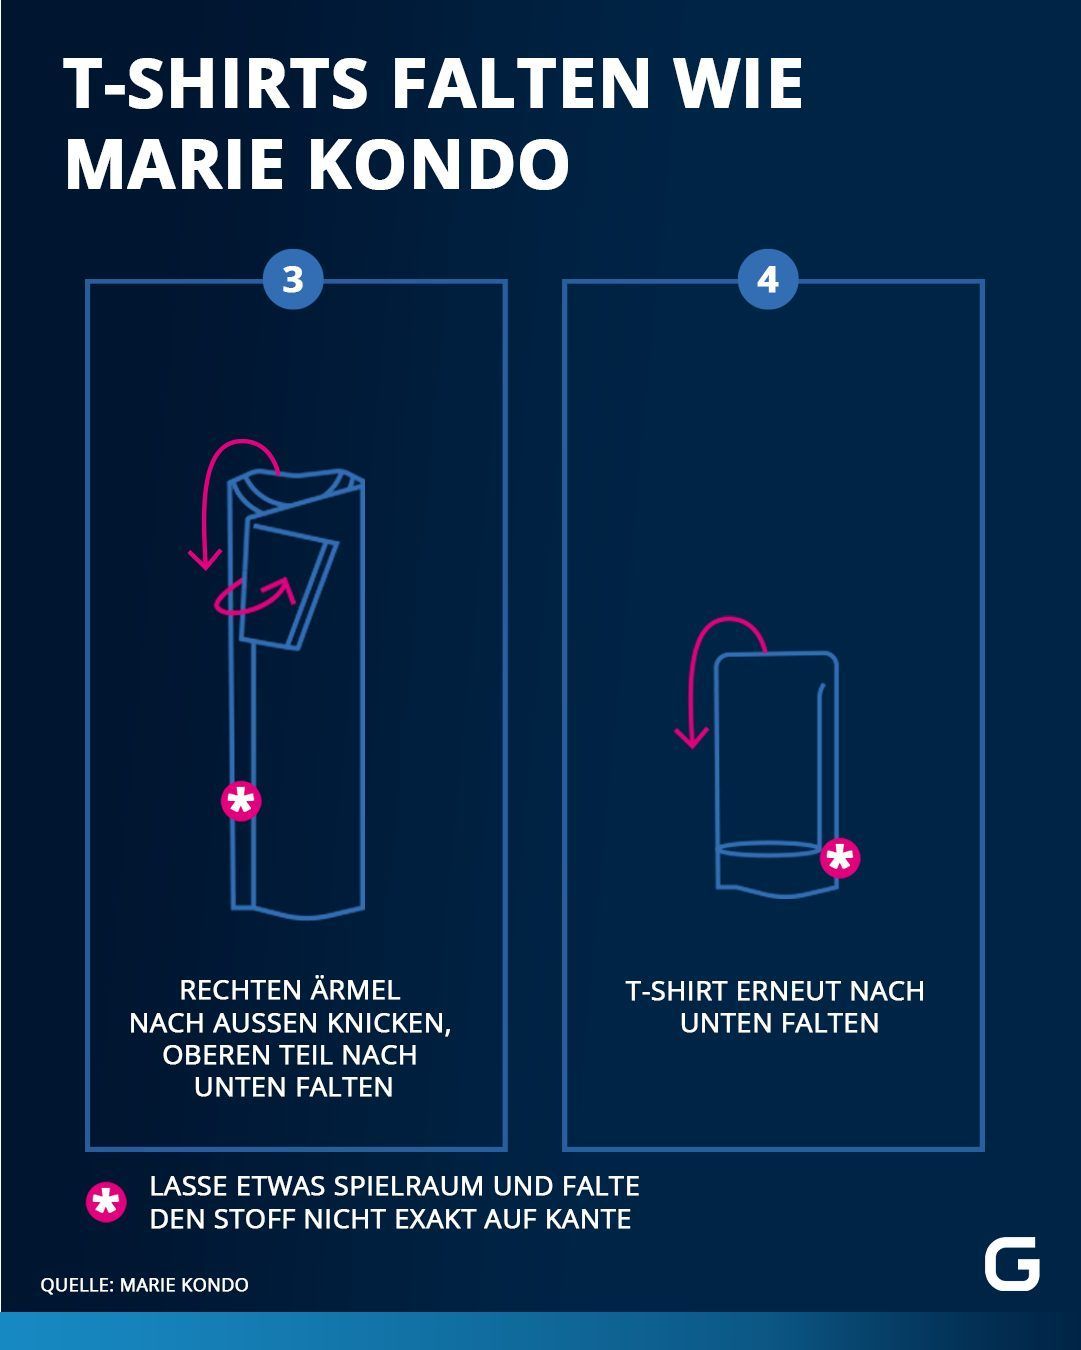 T-Shirts falten wie Marie Kondo: Hier gibt's die Schritt-für-Schritt-Anleitung.